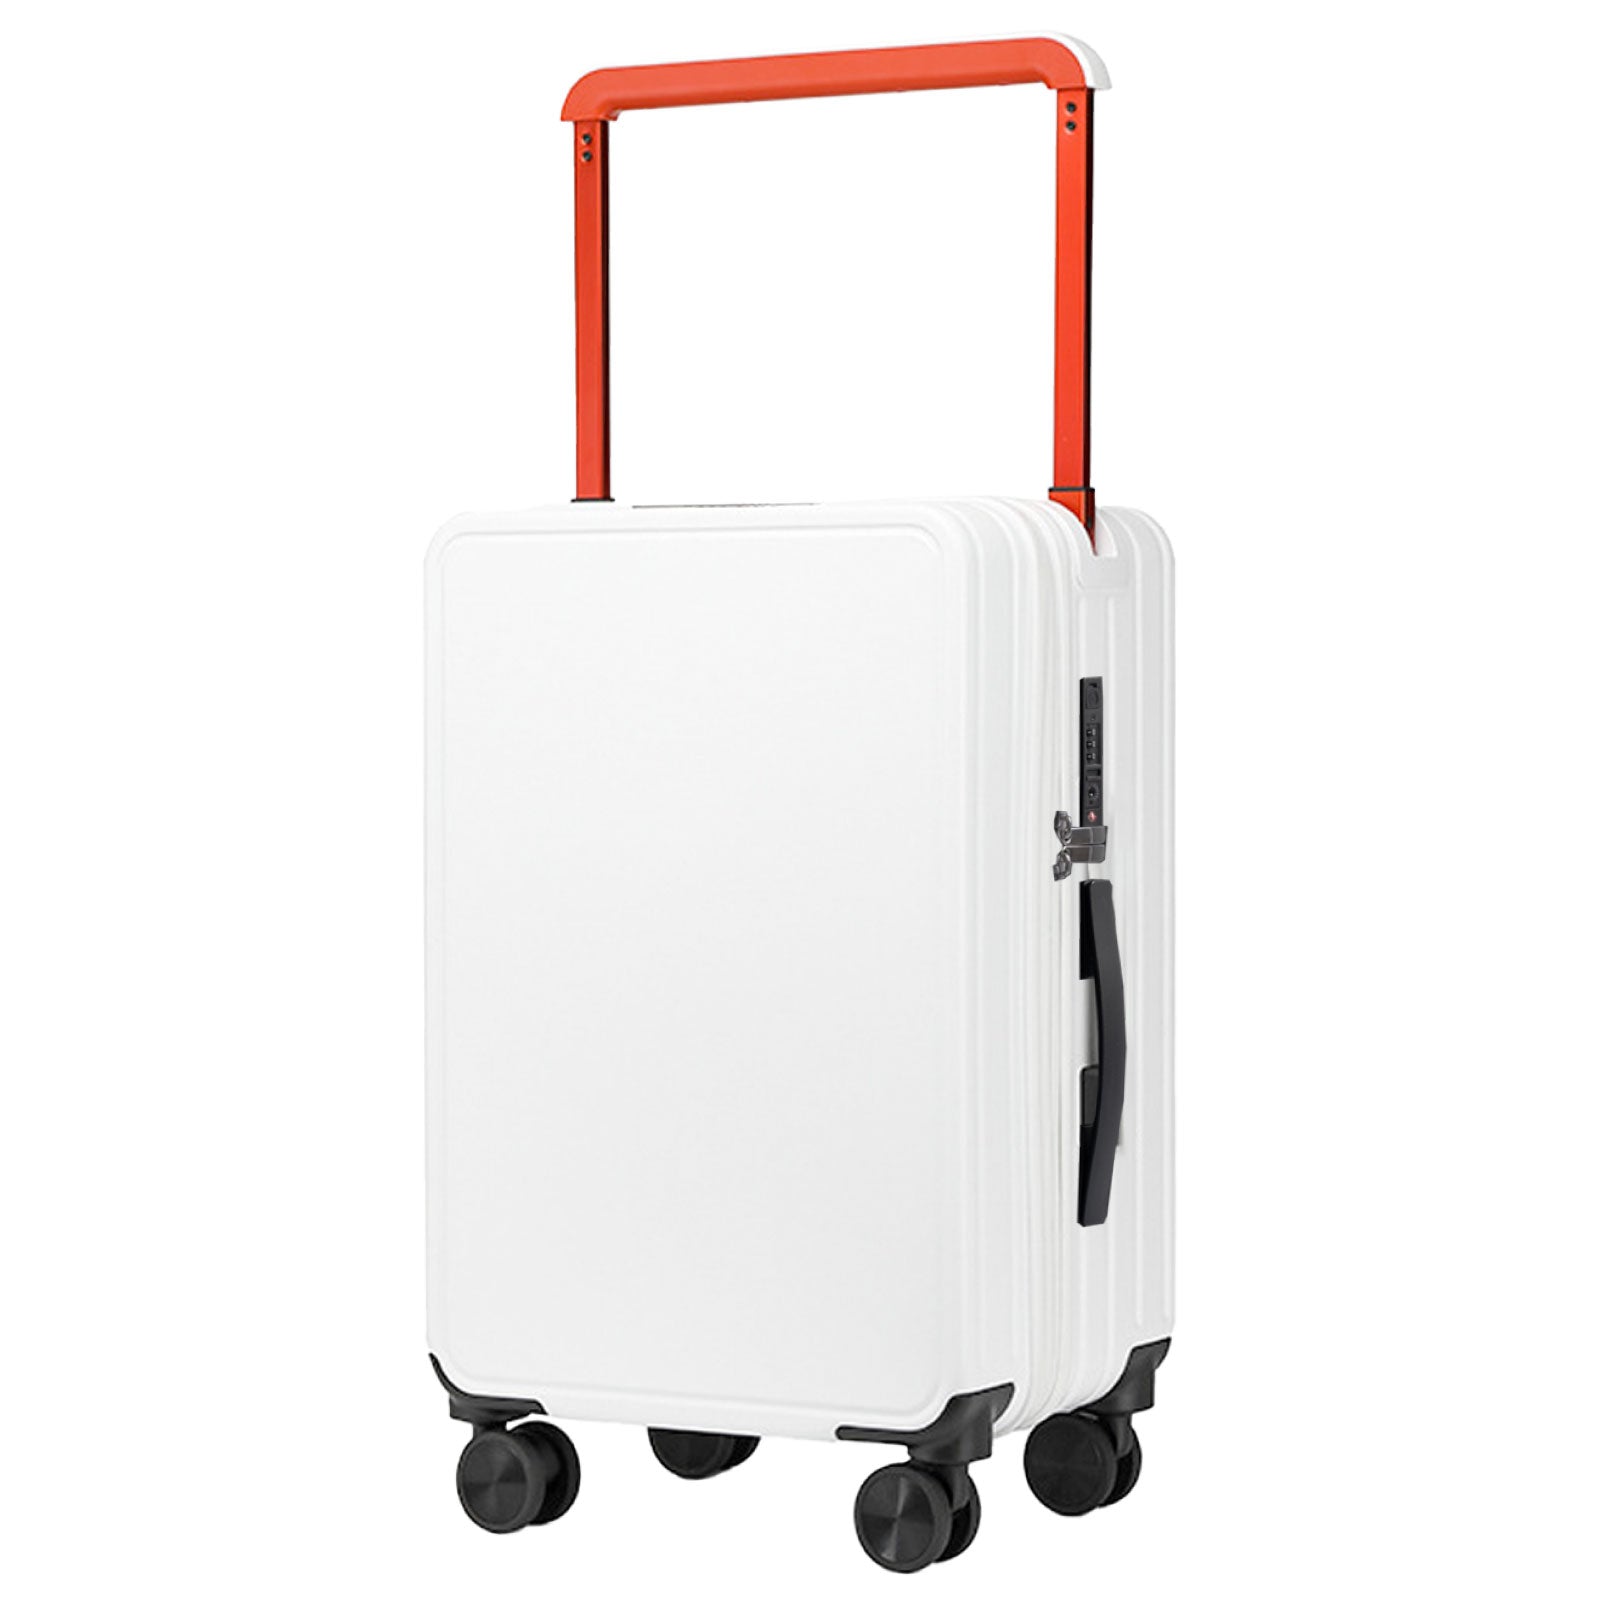 スーツケース USBポート付き キャリーケース キャリーバッグ 6カラー選ぶ 小型4-7日用 宿泊 超軽 大容量 Mサイズ トランク 修学旅行 海外旅行 国内旅行 sc302-24